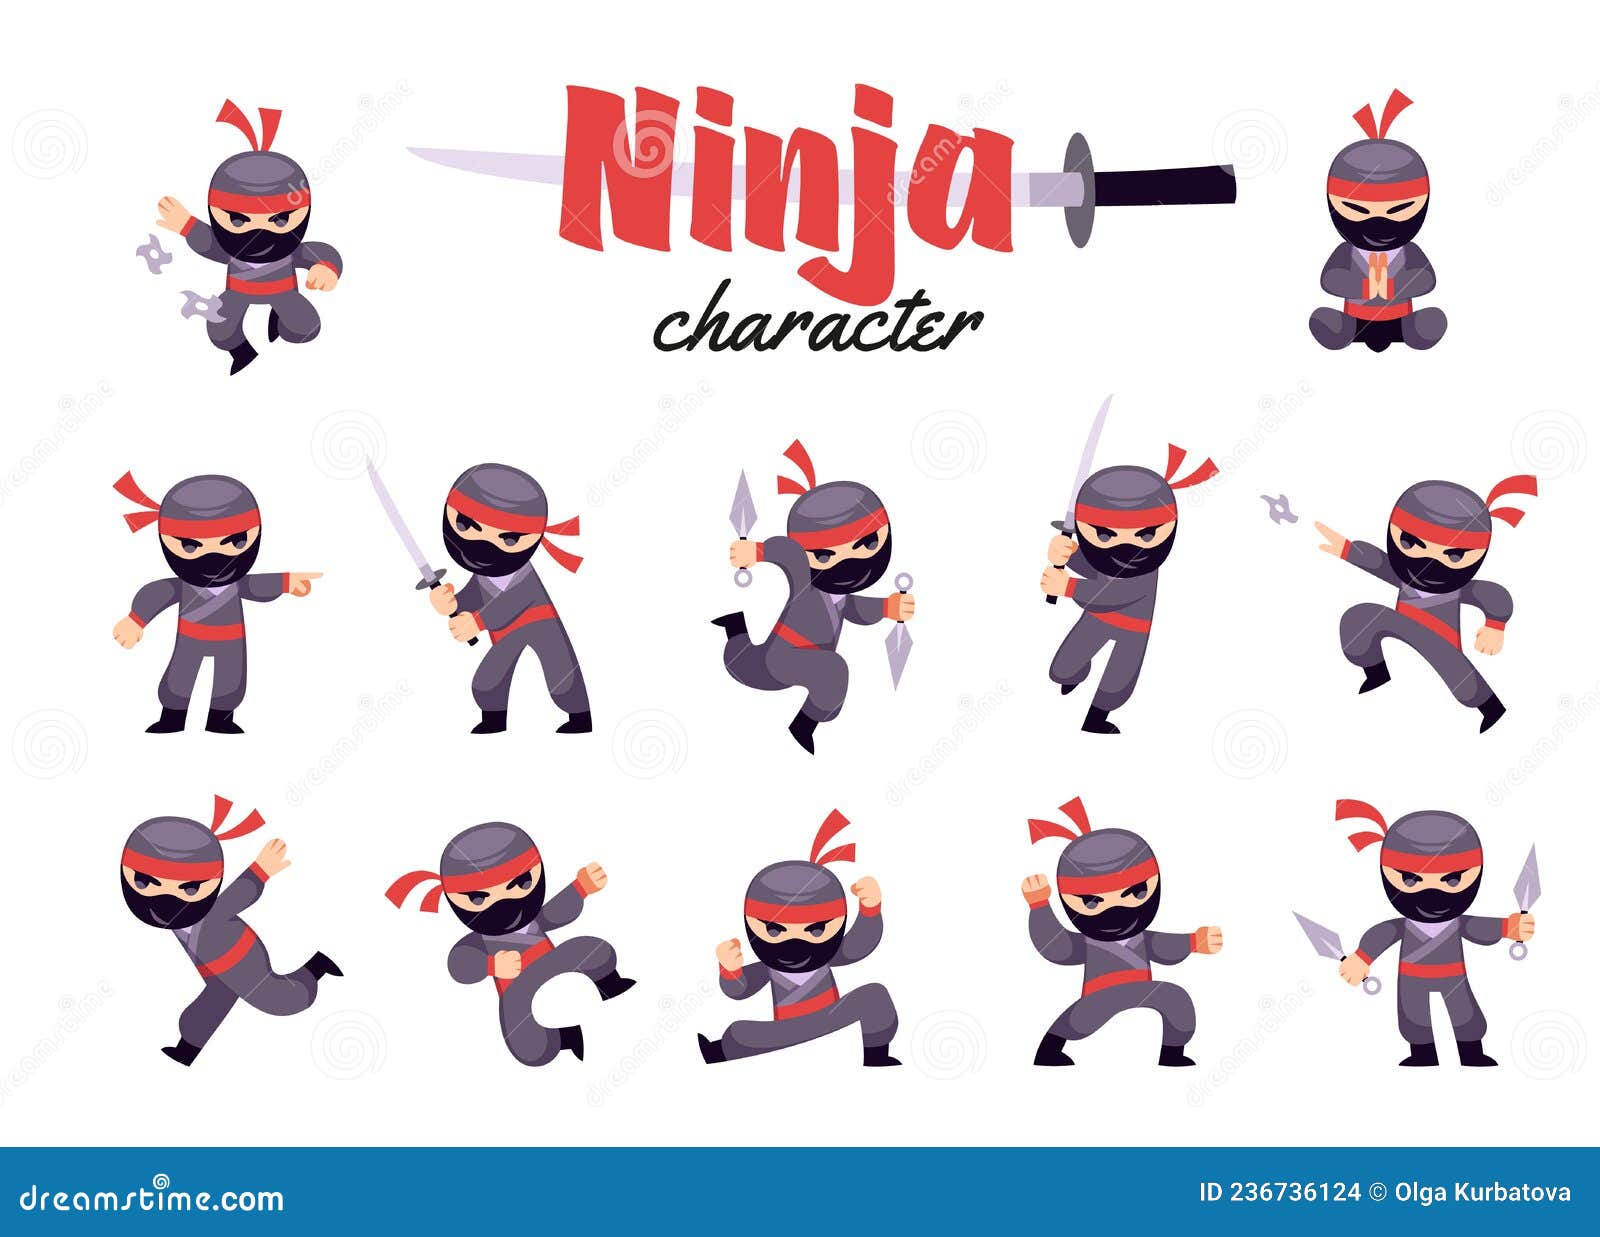 Baixar Vetor De Desenho Do Personagem Ninja